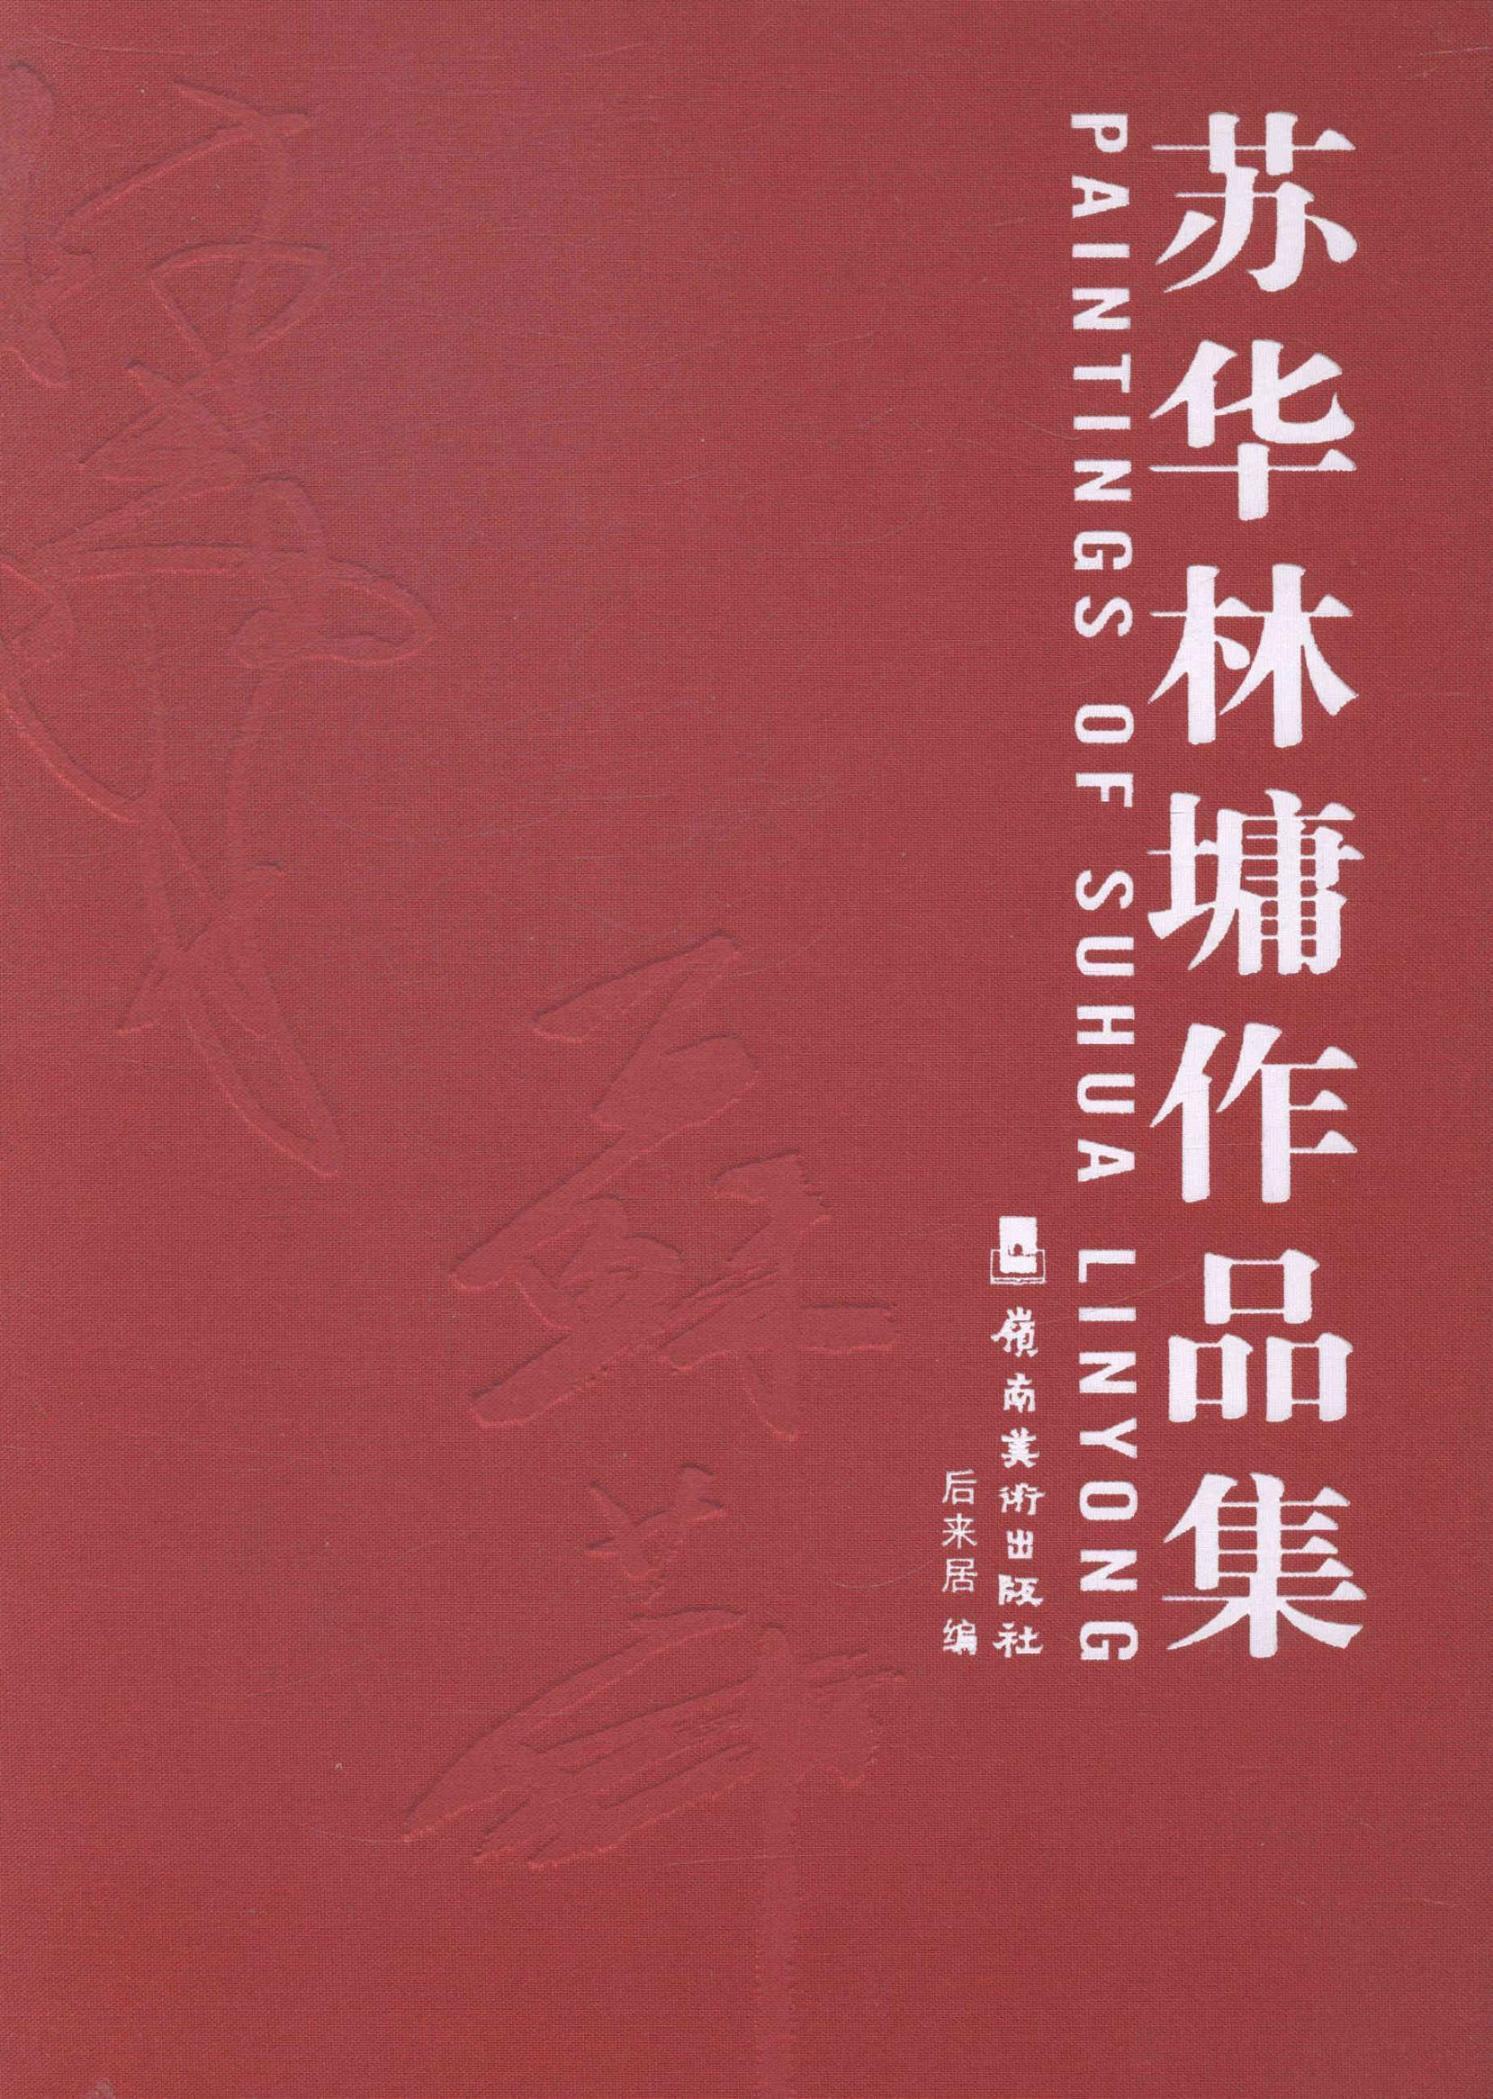 苏华林墉作品集后来居 中国画作品集中国现代艺术书籍